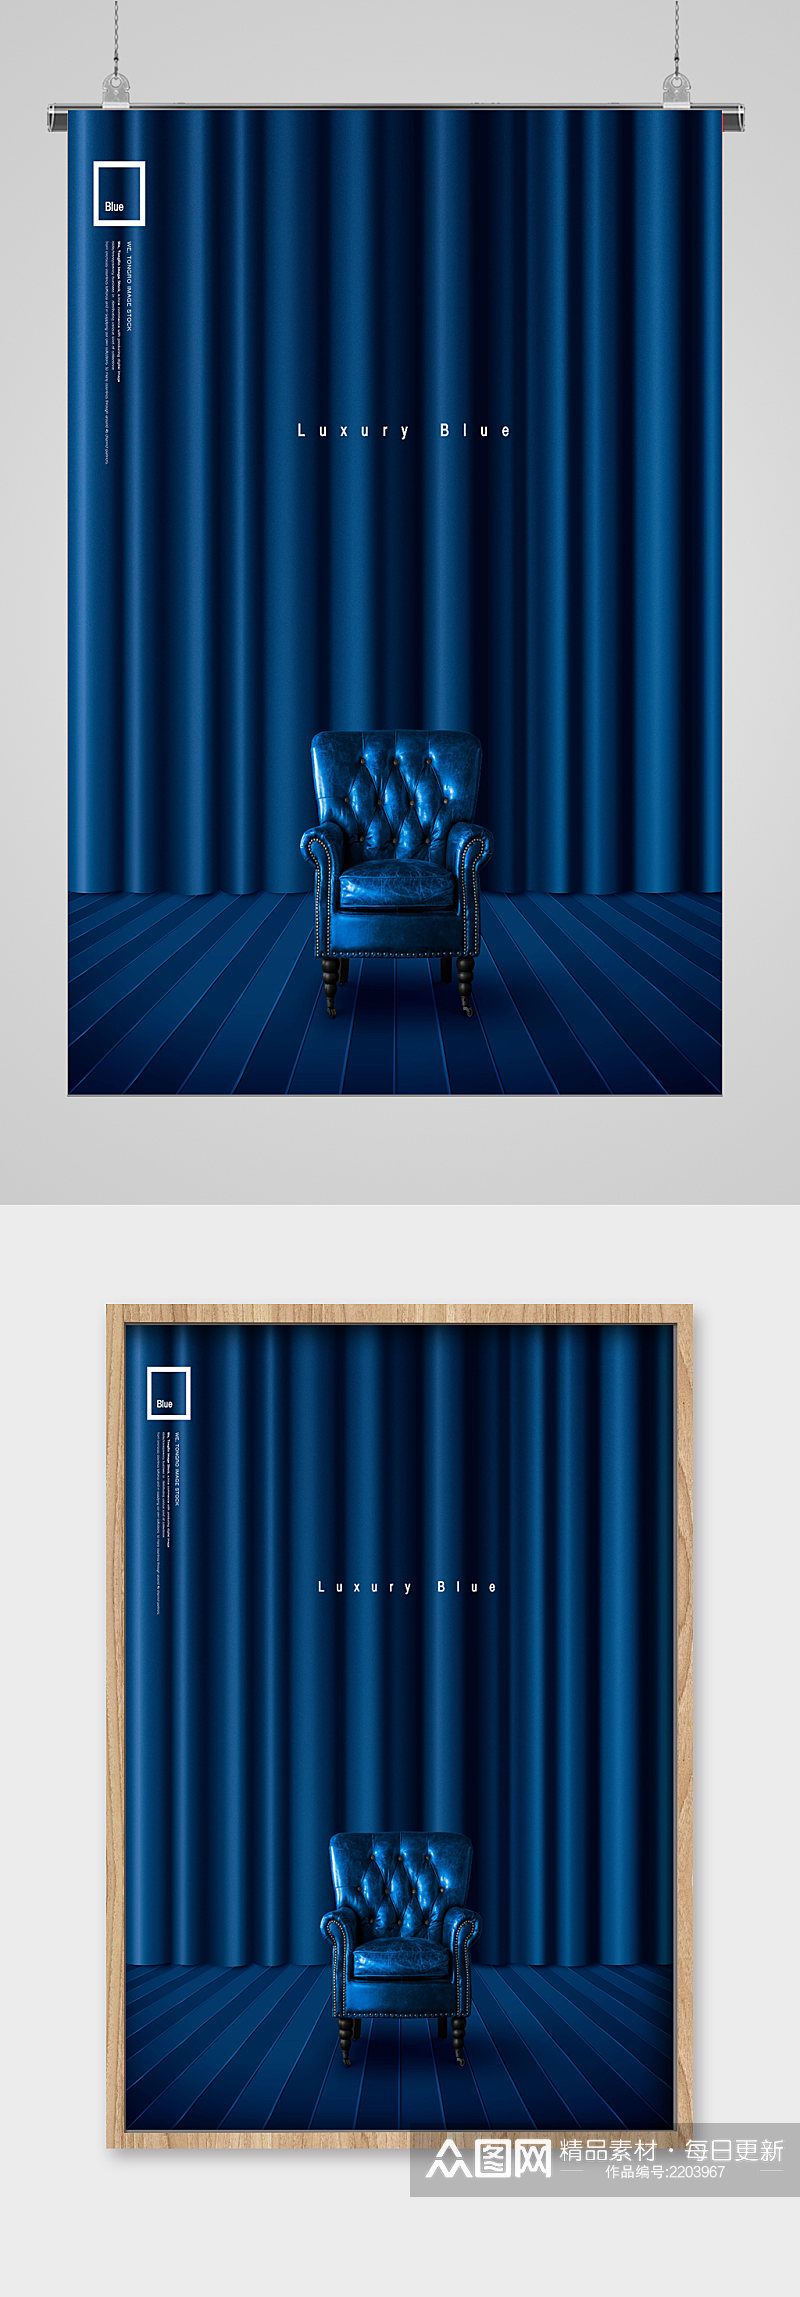 蓝色背景沙发椅装饰宣传海报素材